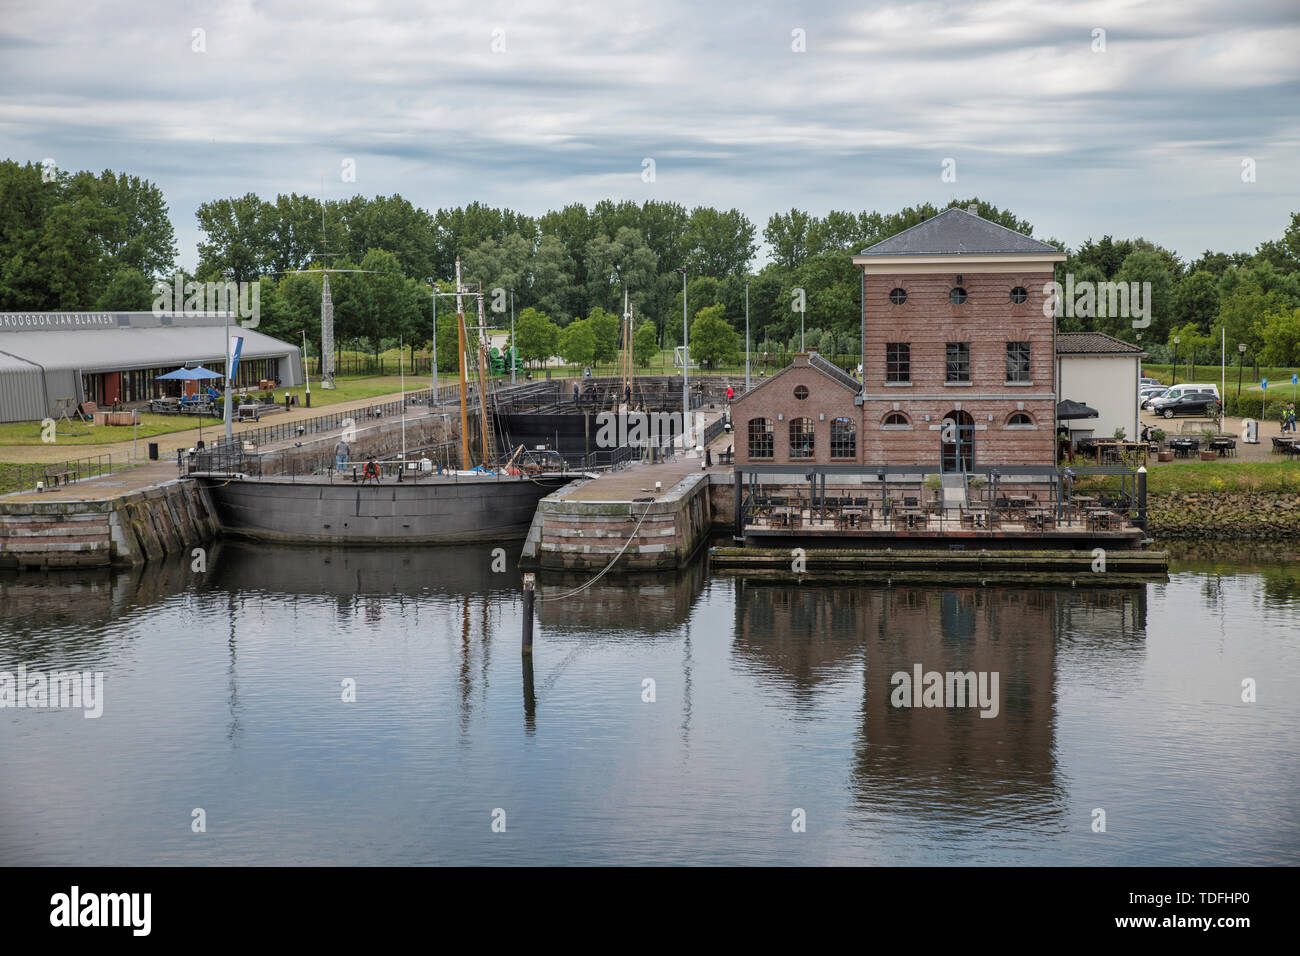 Hellevoetlsuis,Olanda,15-giugno-2019:il bacino di carenaggio Jan blanken in hellevoetlsuis,l'unico ancora lavorando bacino di carenaggio in Olanda che viene ancora usato per le riparazioni di barche e navi,è costruito attorno al 1800 Foto Stock